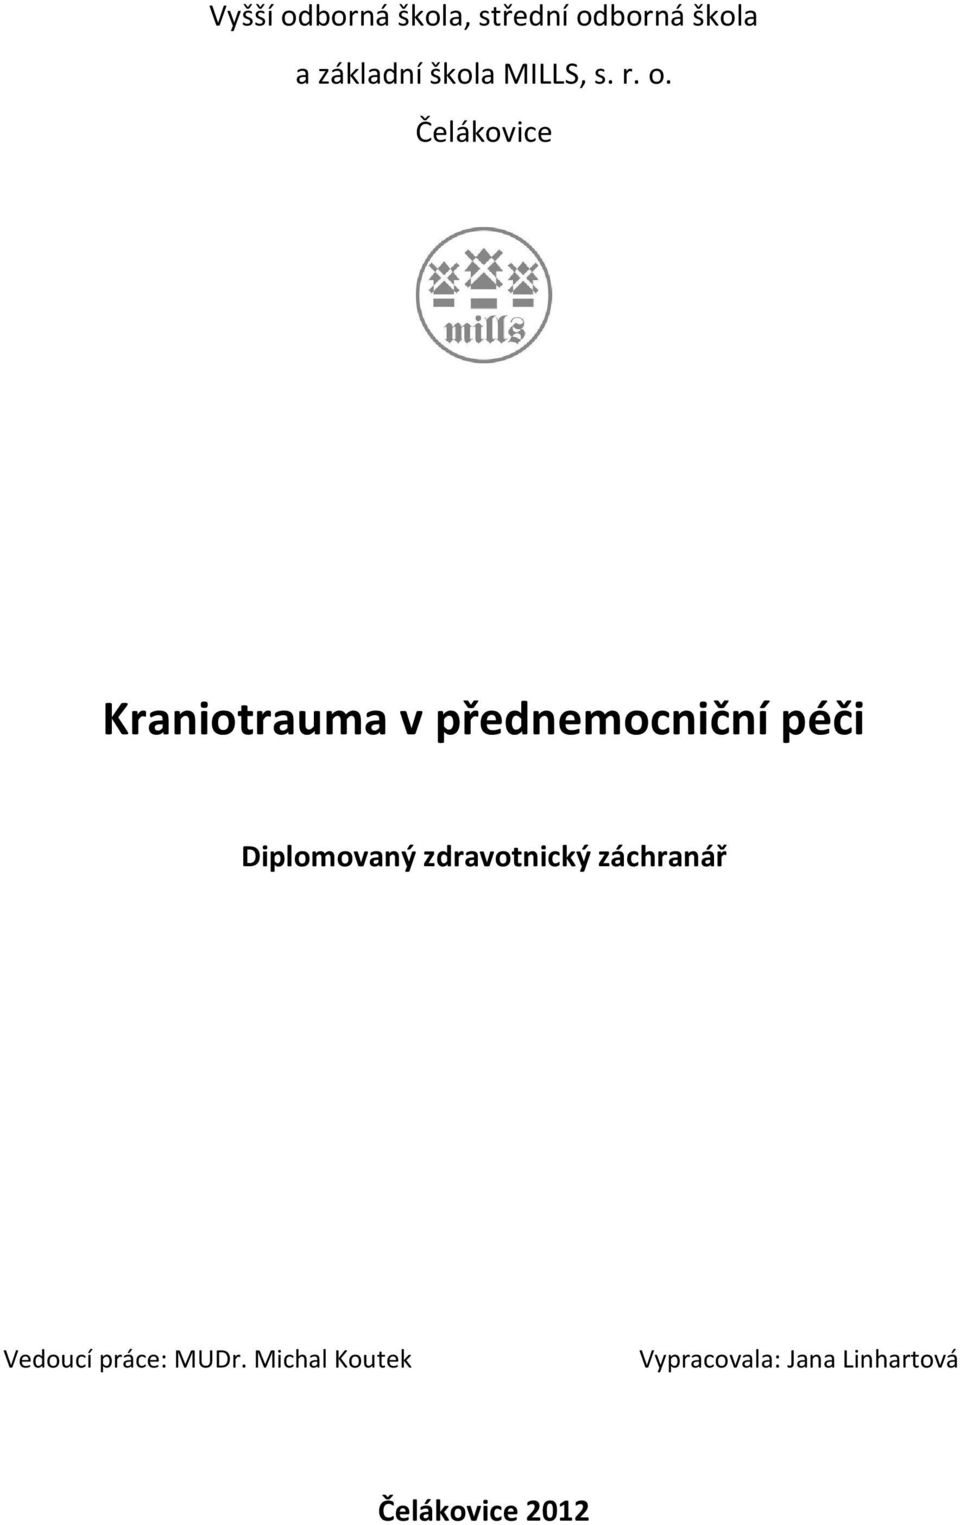 Čelákovice Kraniotrauma v přednemocniční péči Diplomovaný